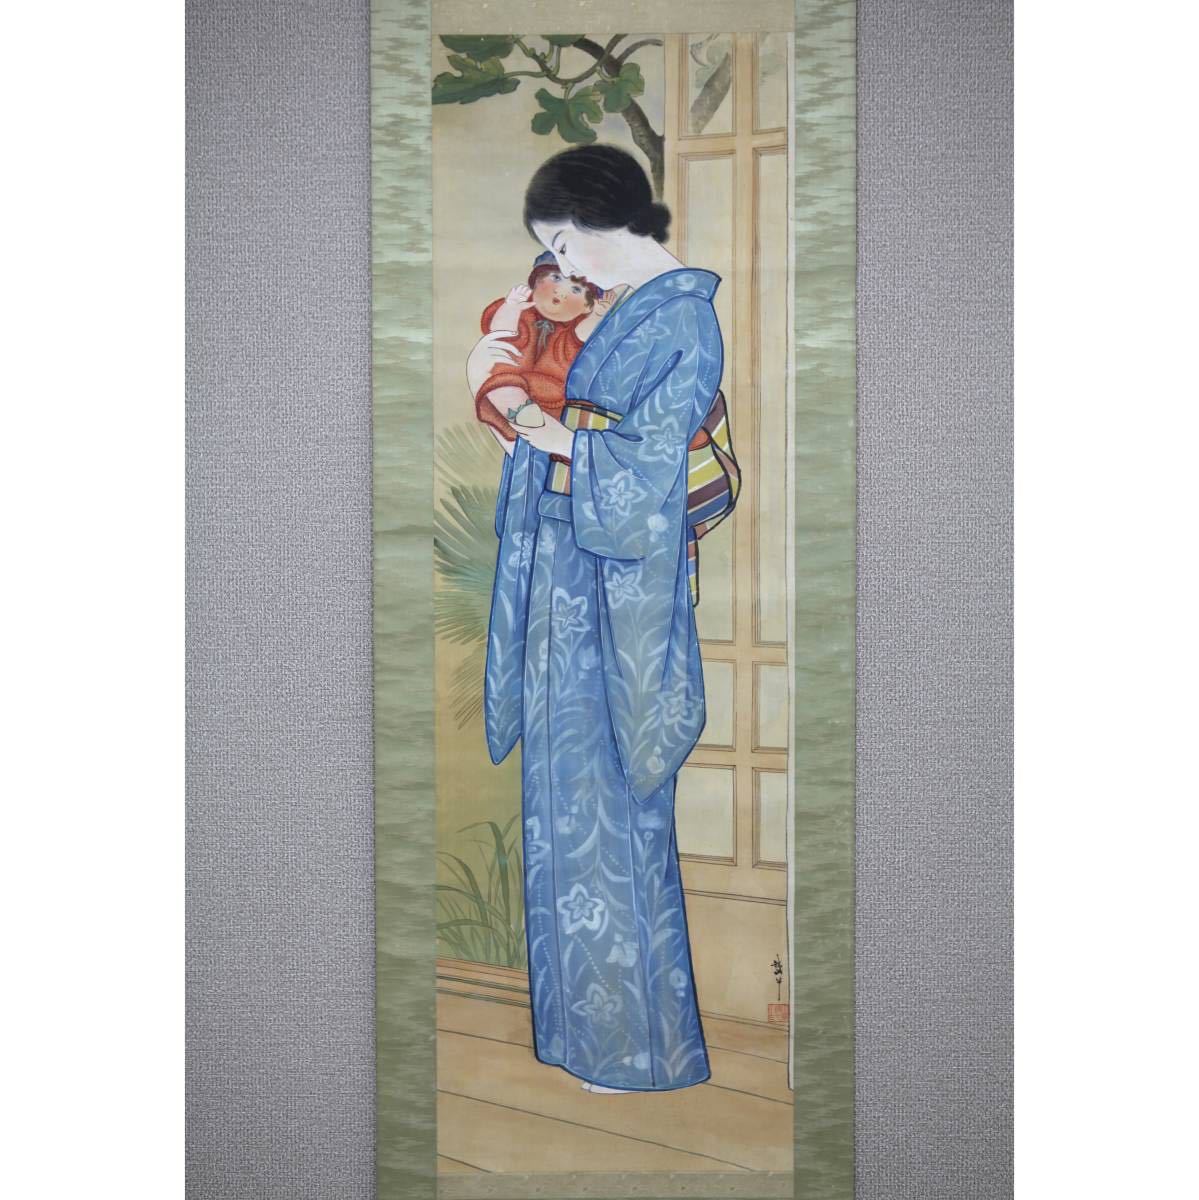 [प्रामाणिक कार्य] [पवनचक्की] टेटसुज़न यानो माँ और बच्चा ◎रेशम पर हस्तलिखित ◎ताइशो-शोवा काल एहिमे व्यक्ति, जापान के सुइयुन कोमुरो डौजिन द्वारा अध्ययन किया गया नंगैन, टीटेन निटेन जज बिजिंगा का विशेष चयन, चित्रकारी, जापानी पेंटिंग, व्यक्ति, बोधिसत्त्व